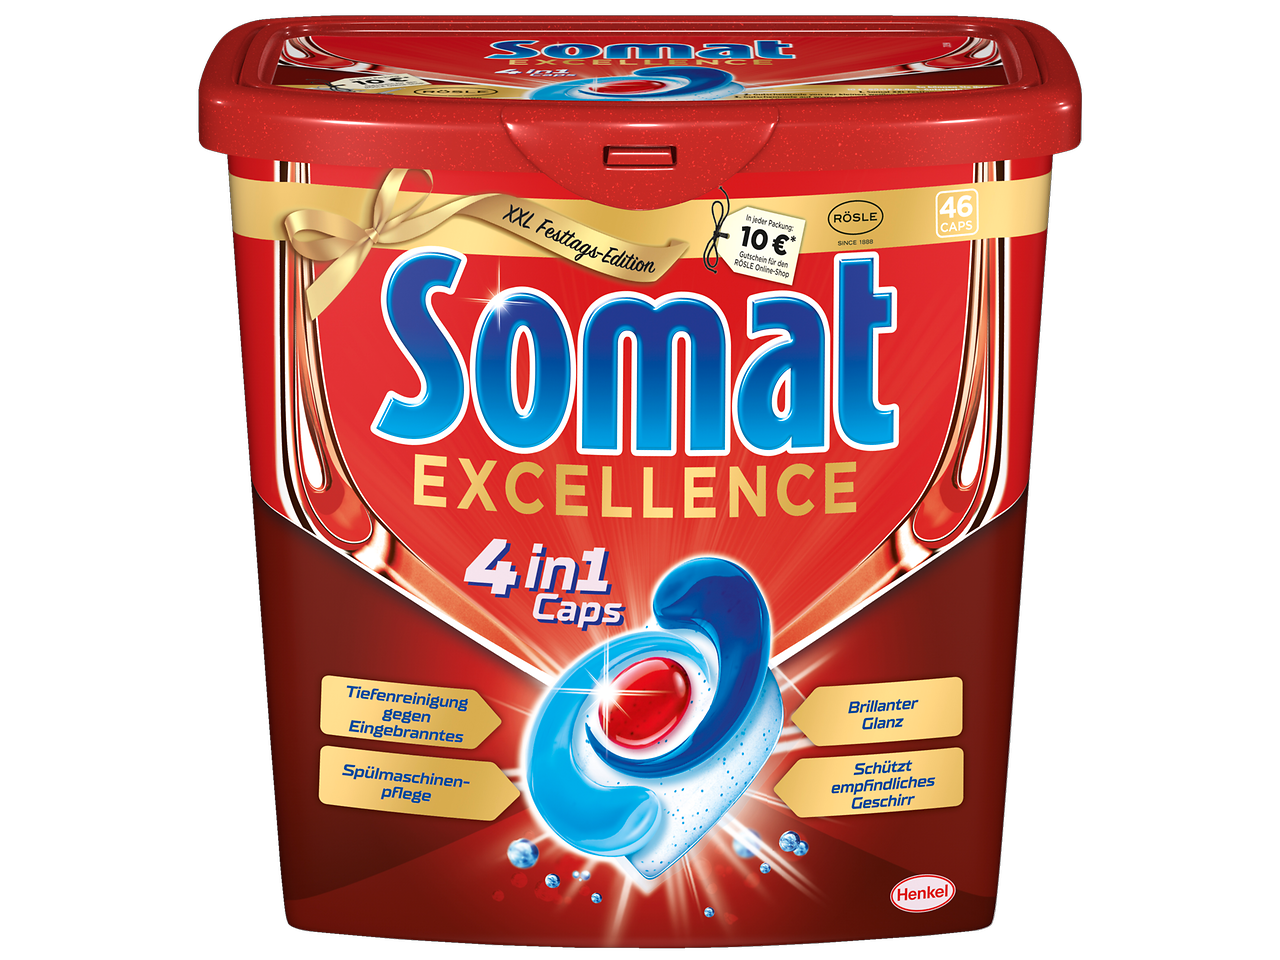 Somat Excellence 4in1 Caps XXL-Festtags-Edition mit 10 Euro Gutschein